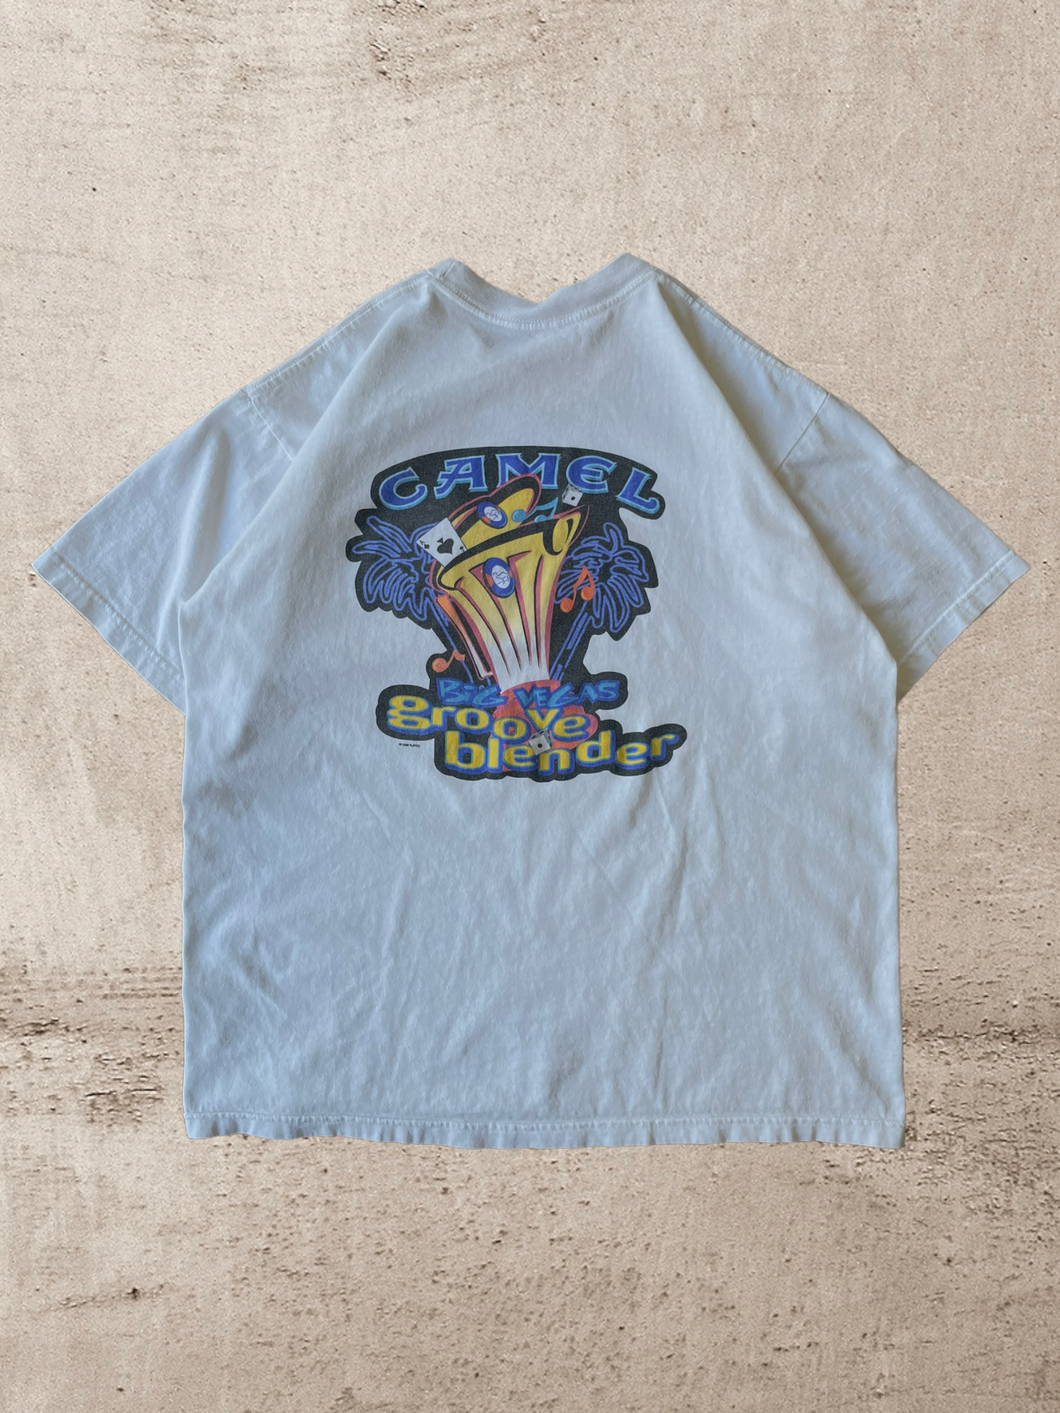 1996 Camel Cigarettes T-Shirt - XL